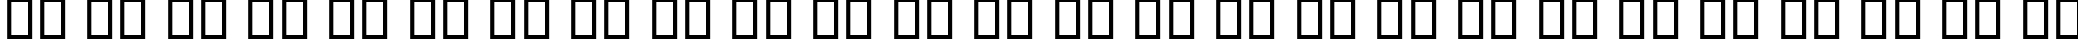 Пример написания английского алфавита шрифтом B Koodak Bold